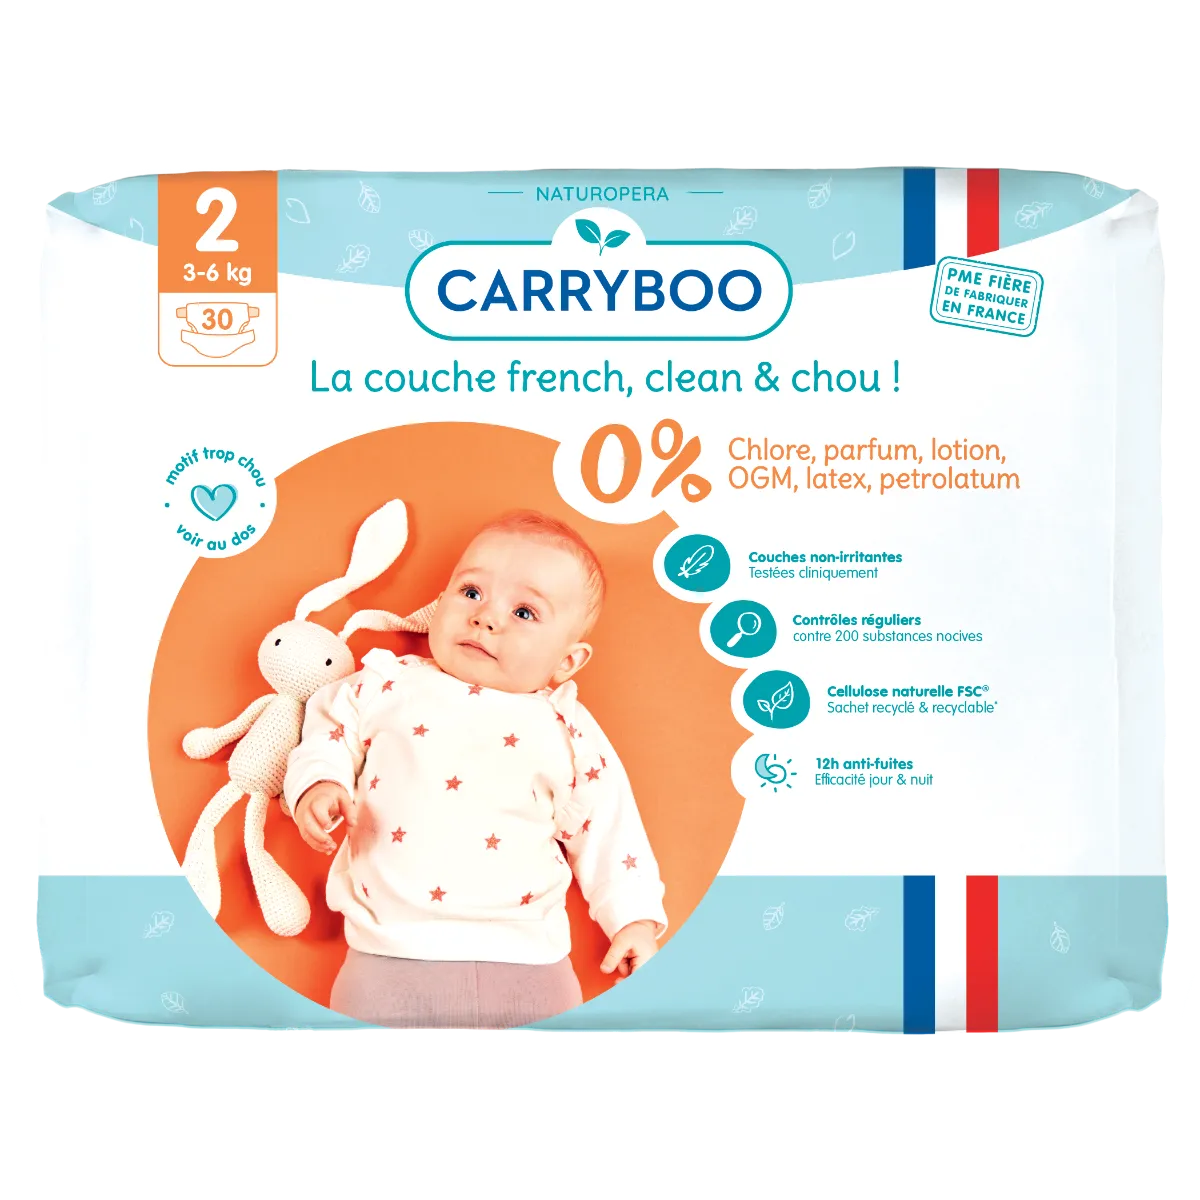 Scutece bio hipoalergence pentru nou nascuti 3-6kg marimea 2, 30 bucati, Carryboo